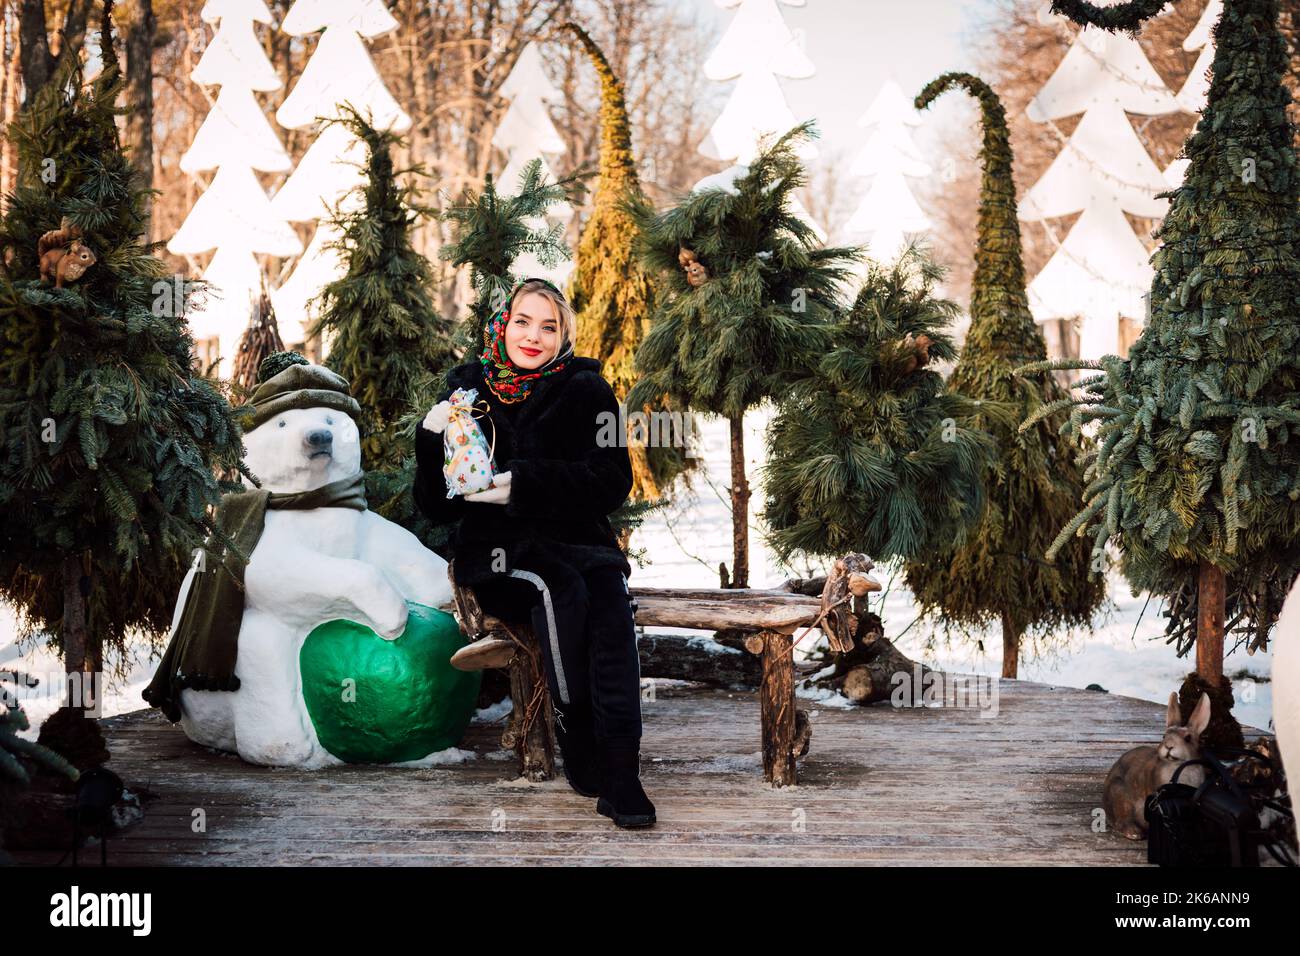 Eine Frau in einem nationalen ukrainischen Kopftuch sitzt auf einer Bank in der Nähe von Weihnachtsbäumen Stockfoto